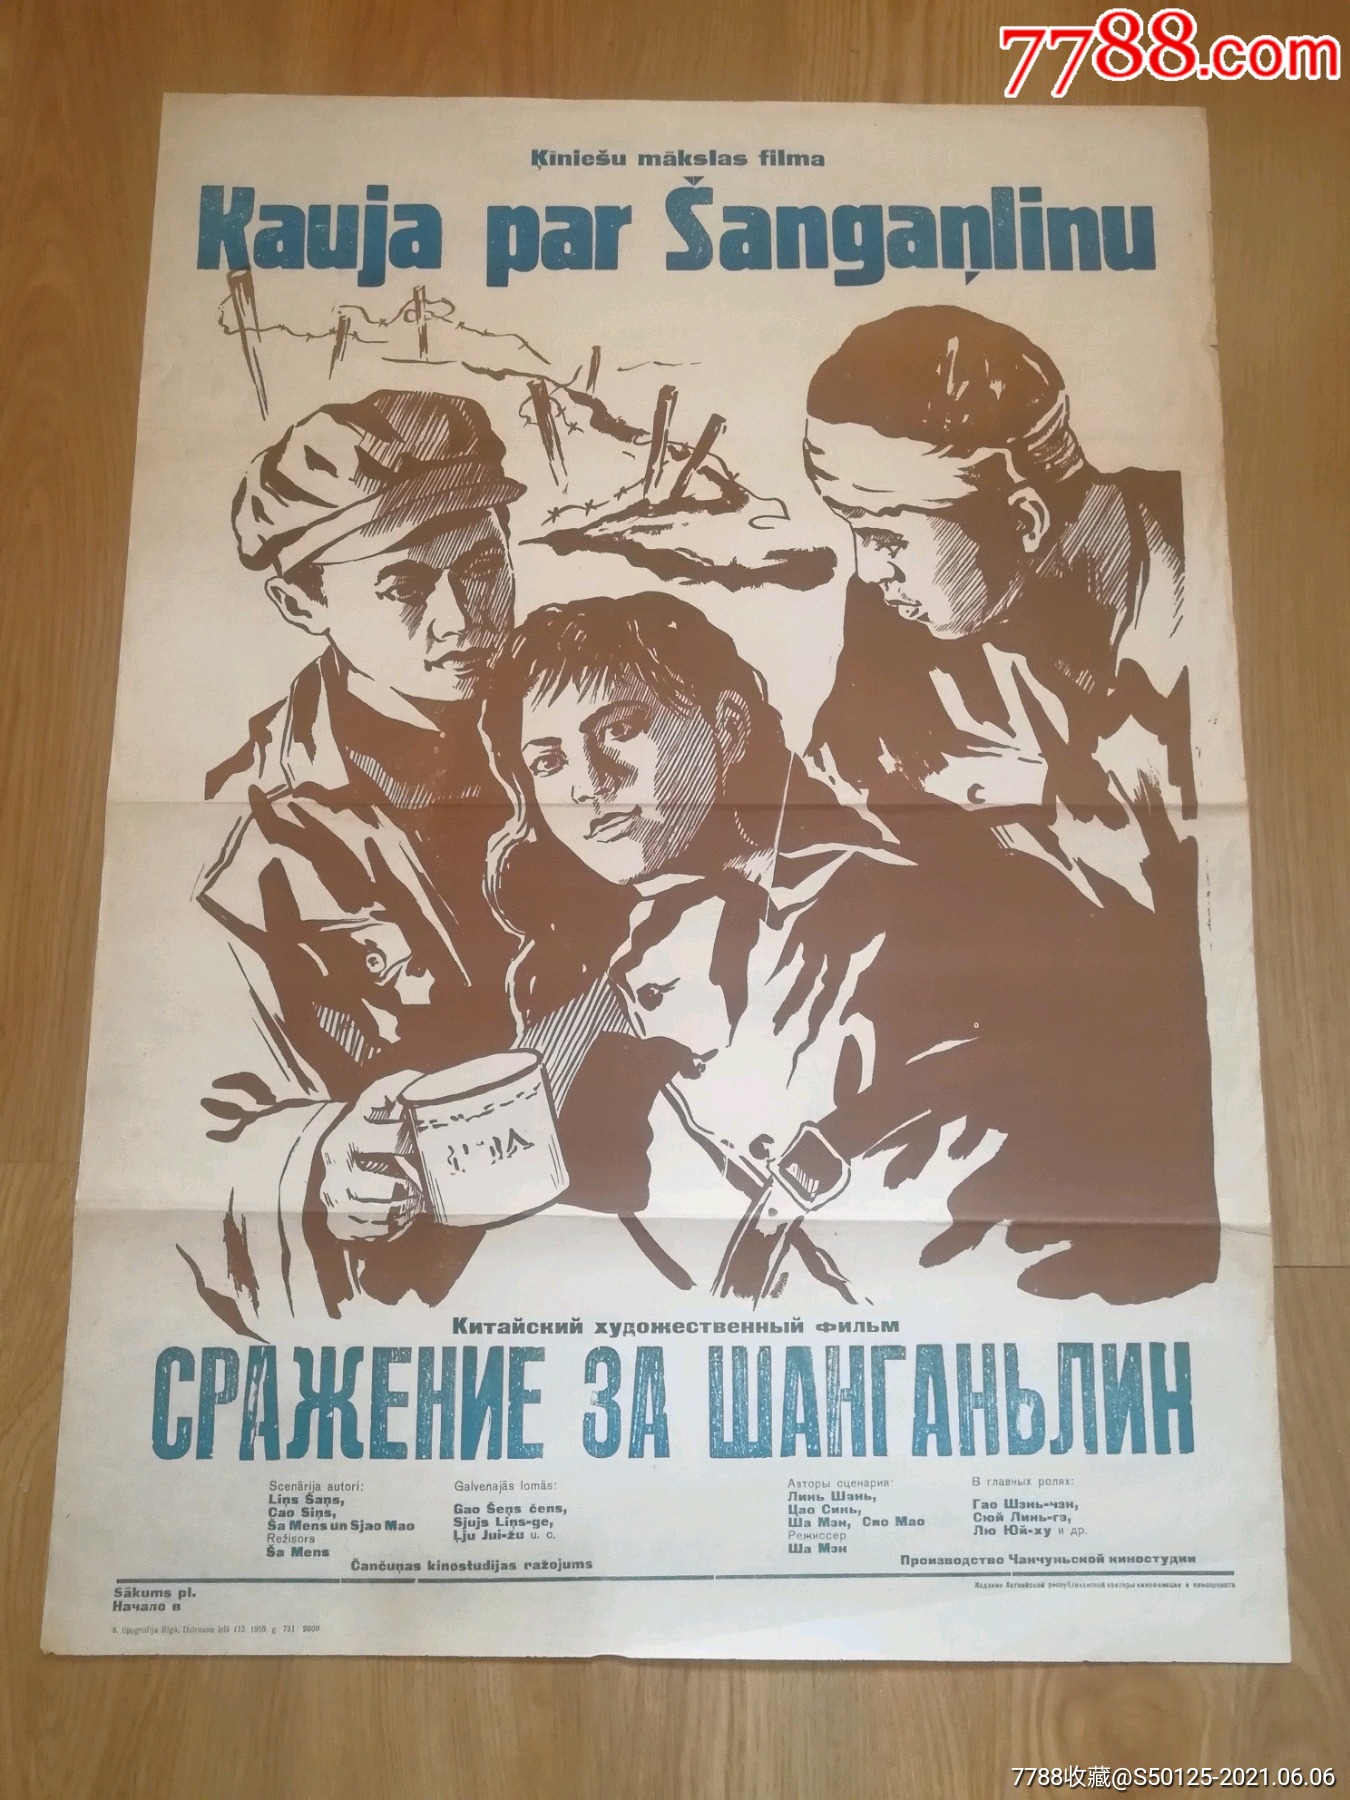 上甘岭前苏联版原版电影海报